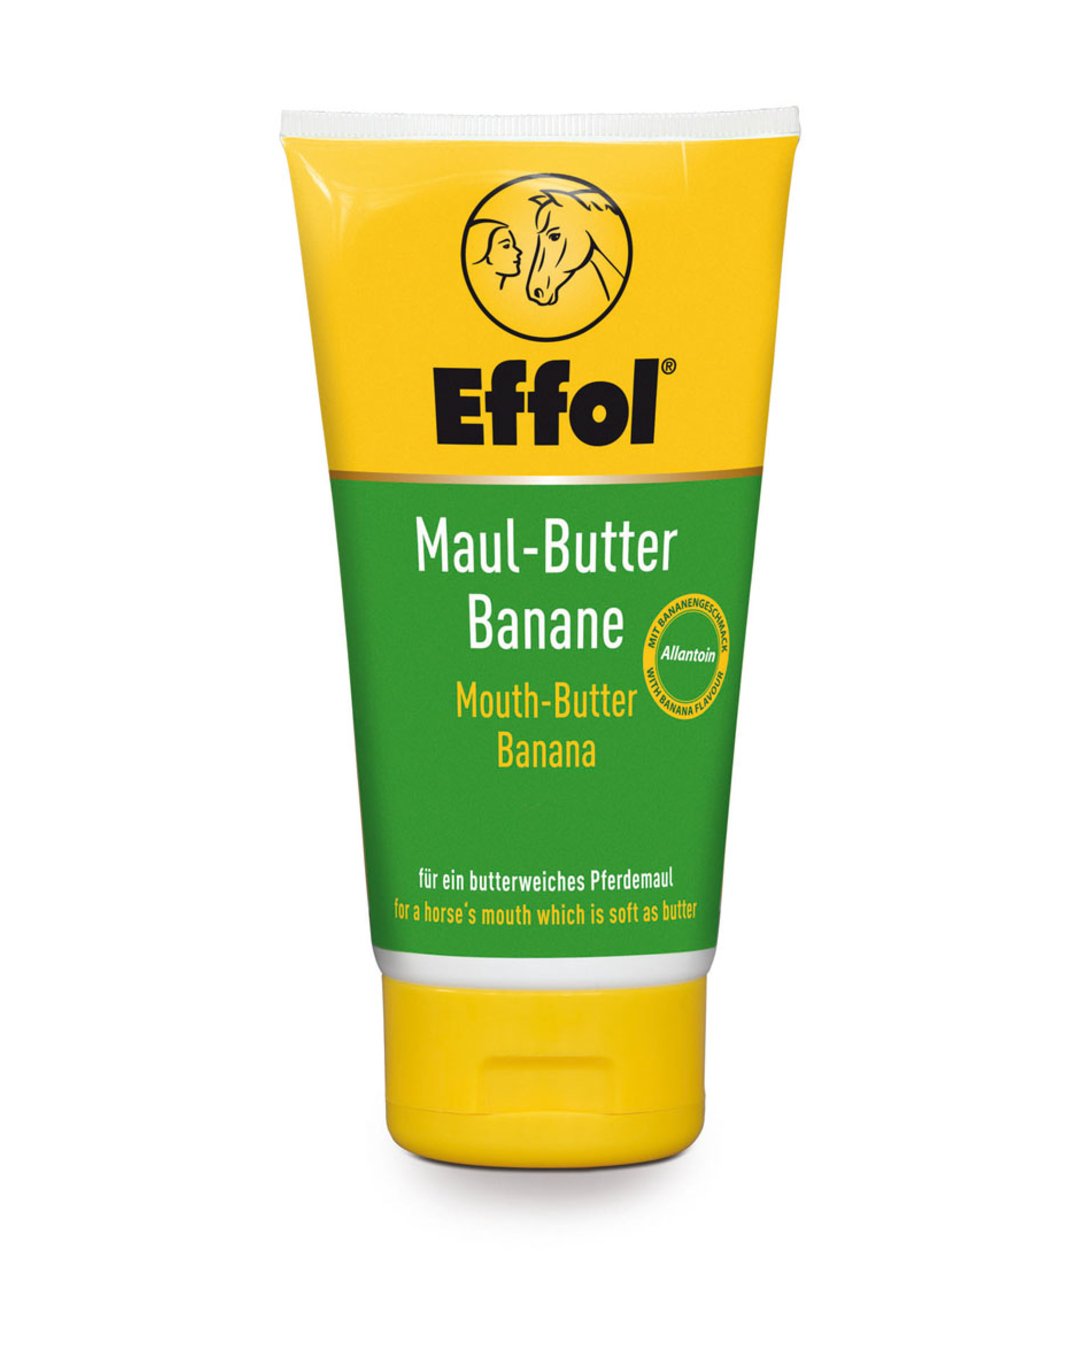 Maul-Butter Banane